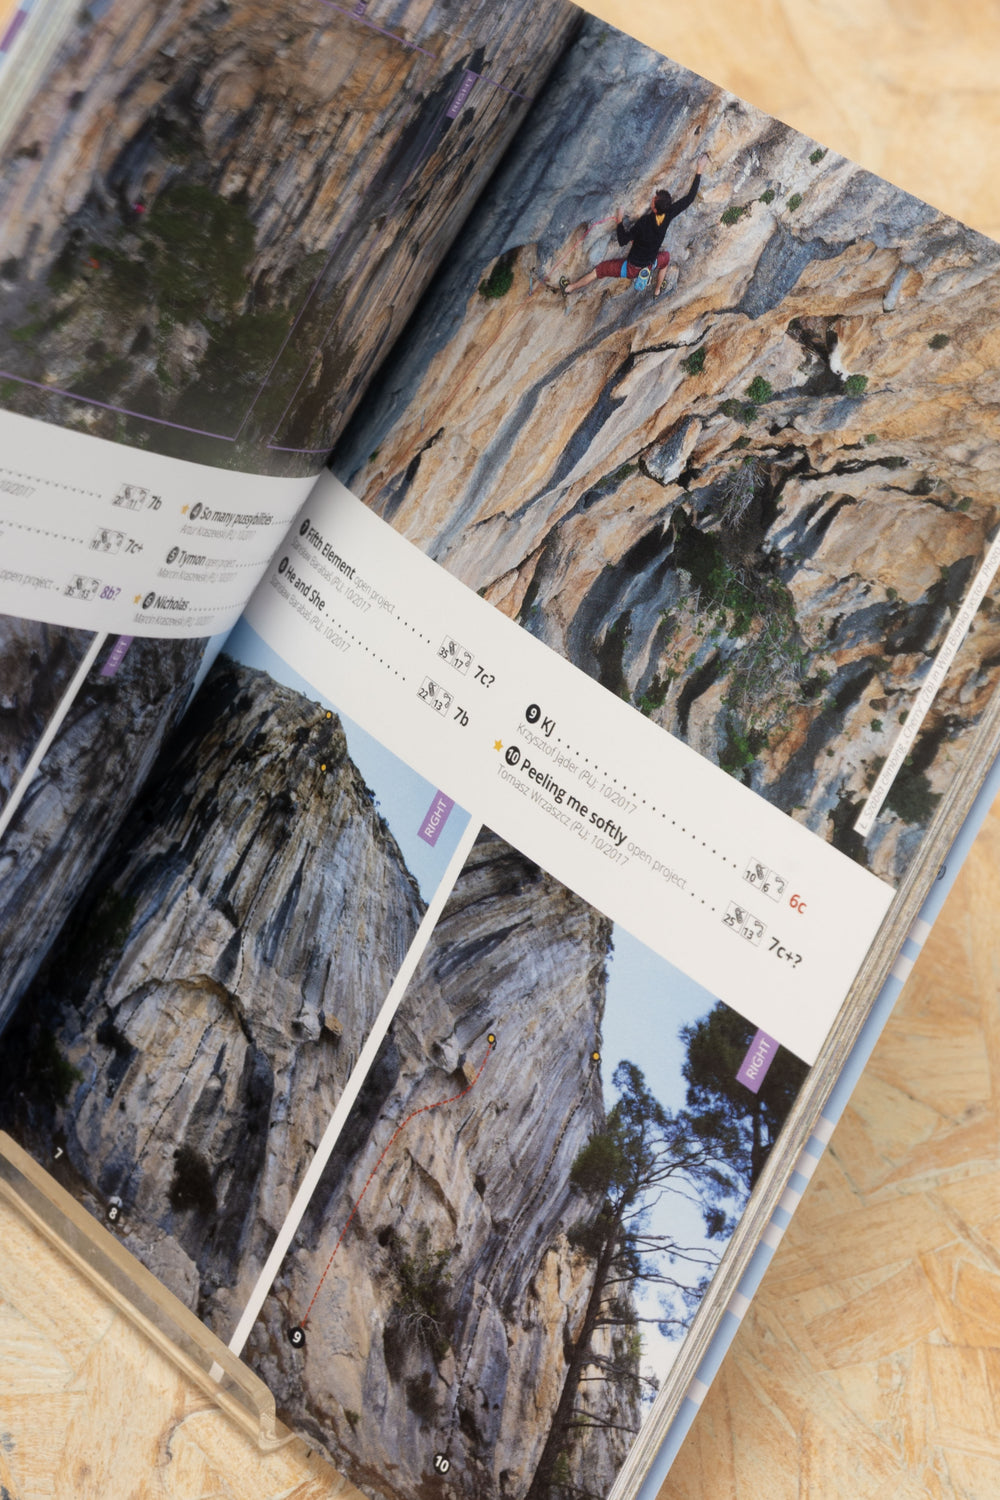 Karpathos Rock Climbing Guide Book